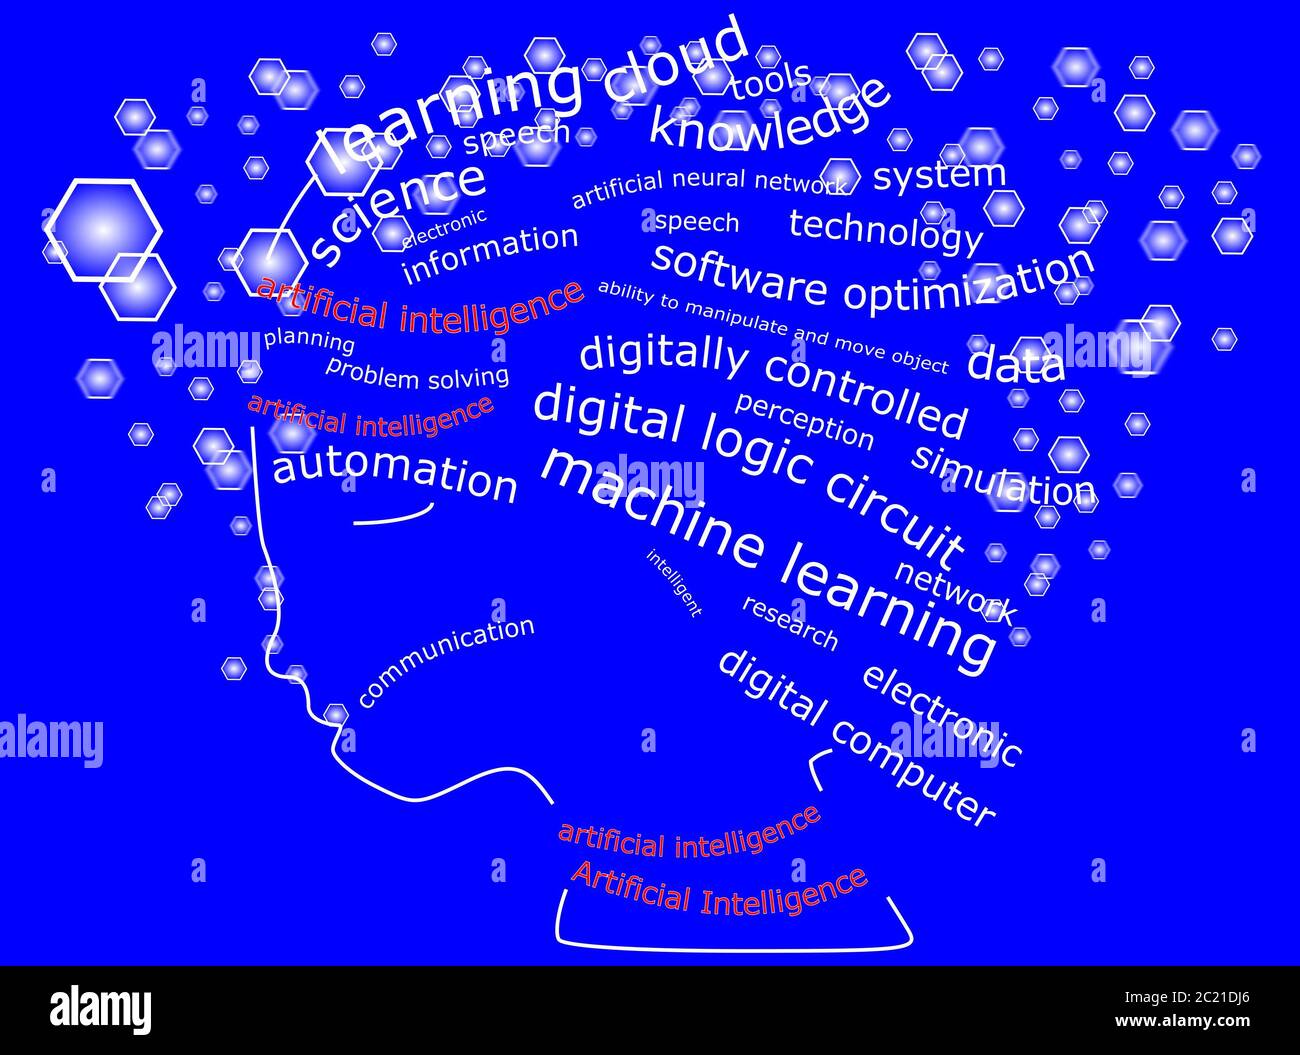 Künstliche Intelligenz Wordcloud auf dekorativen blauen Hintergrund â €" Illustration Stockfoto